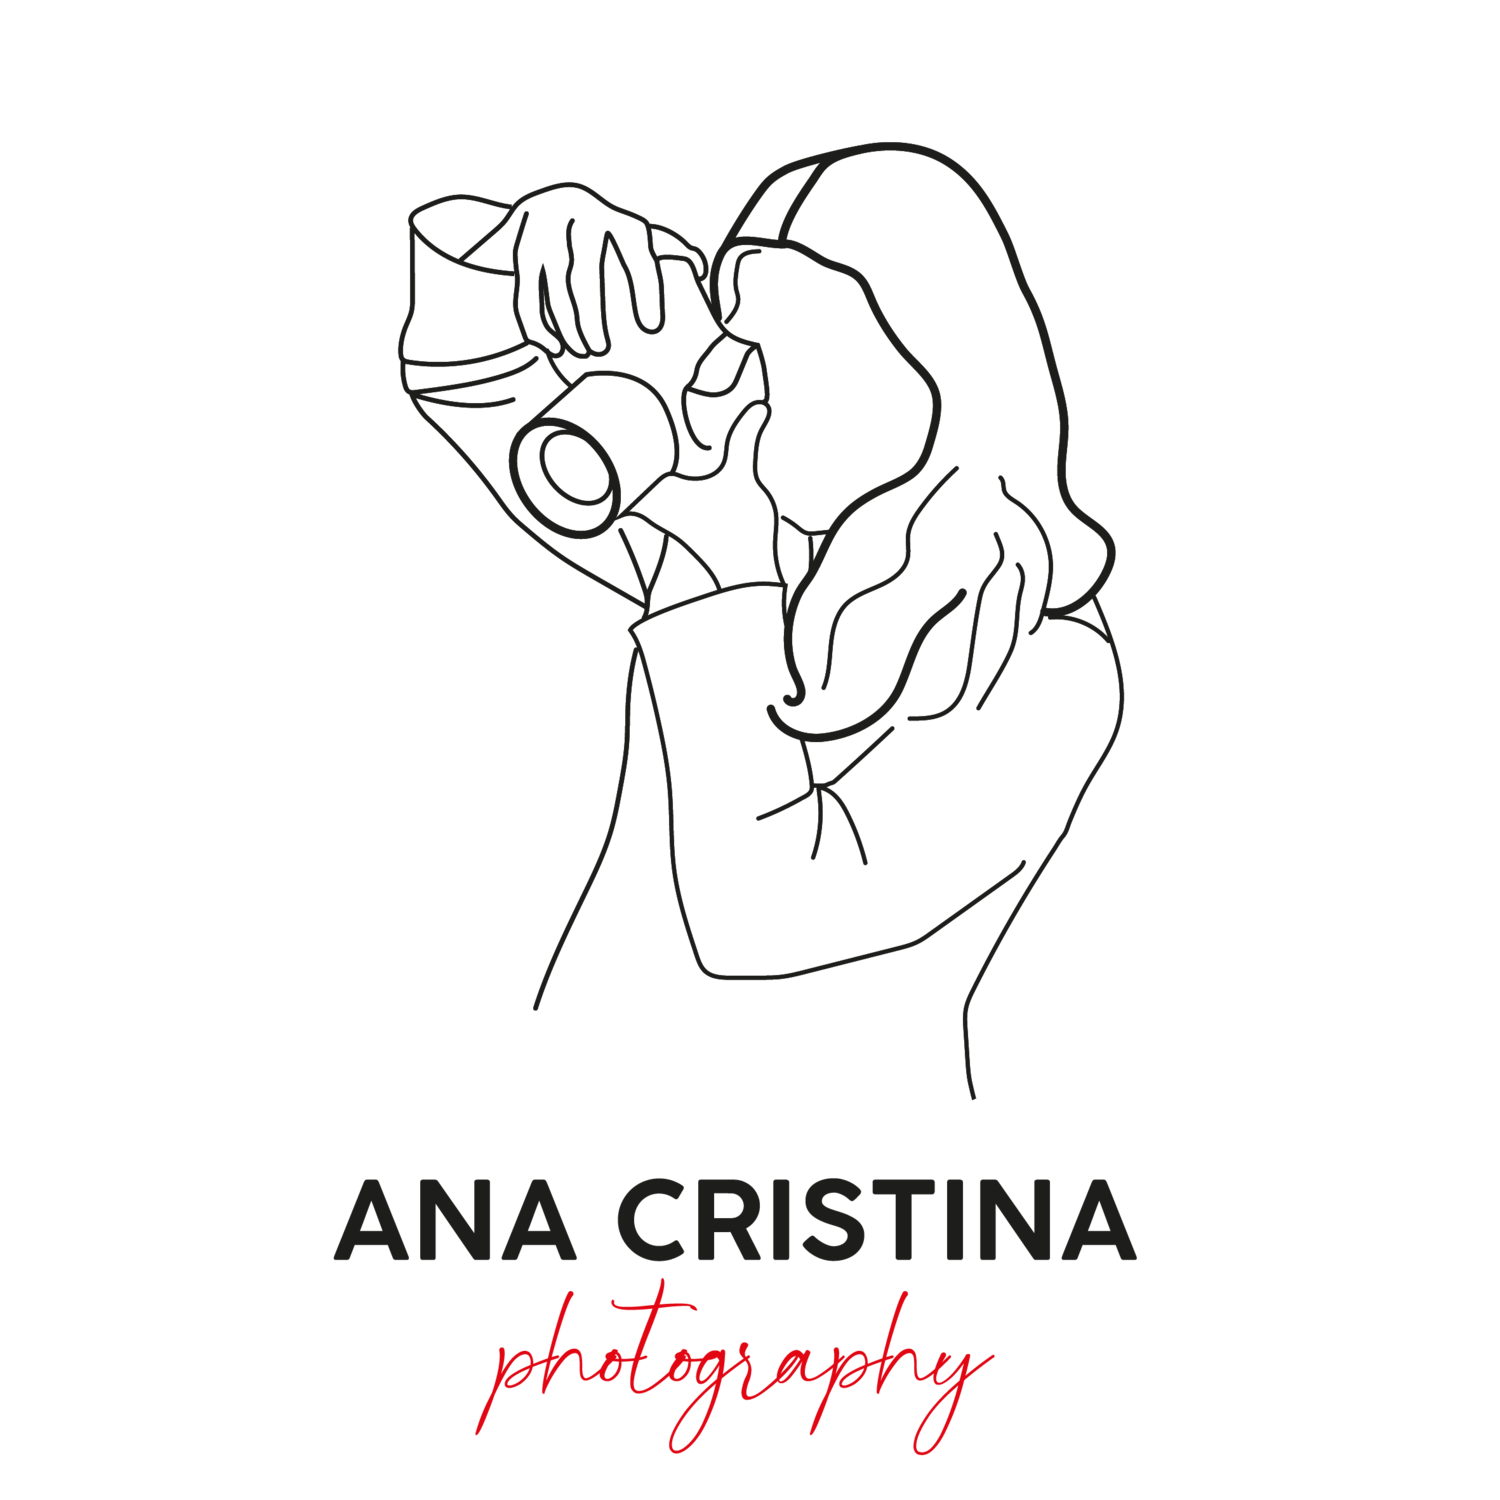 Ana Cristina Photography | Servicios de fotografía en Ibiza | Ibiza Wedding Photographer